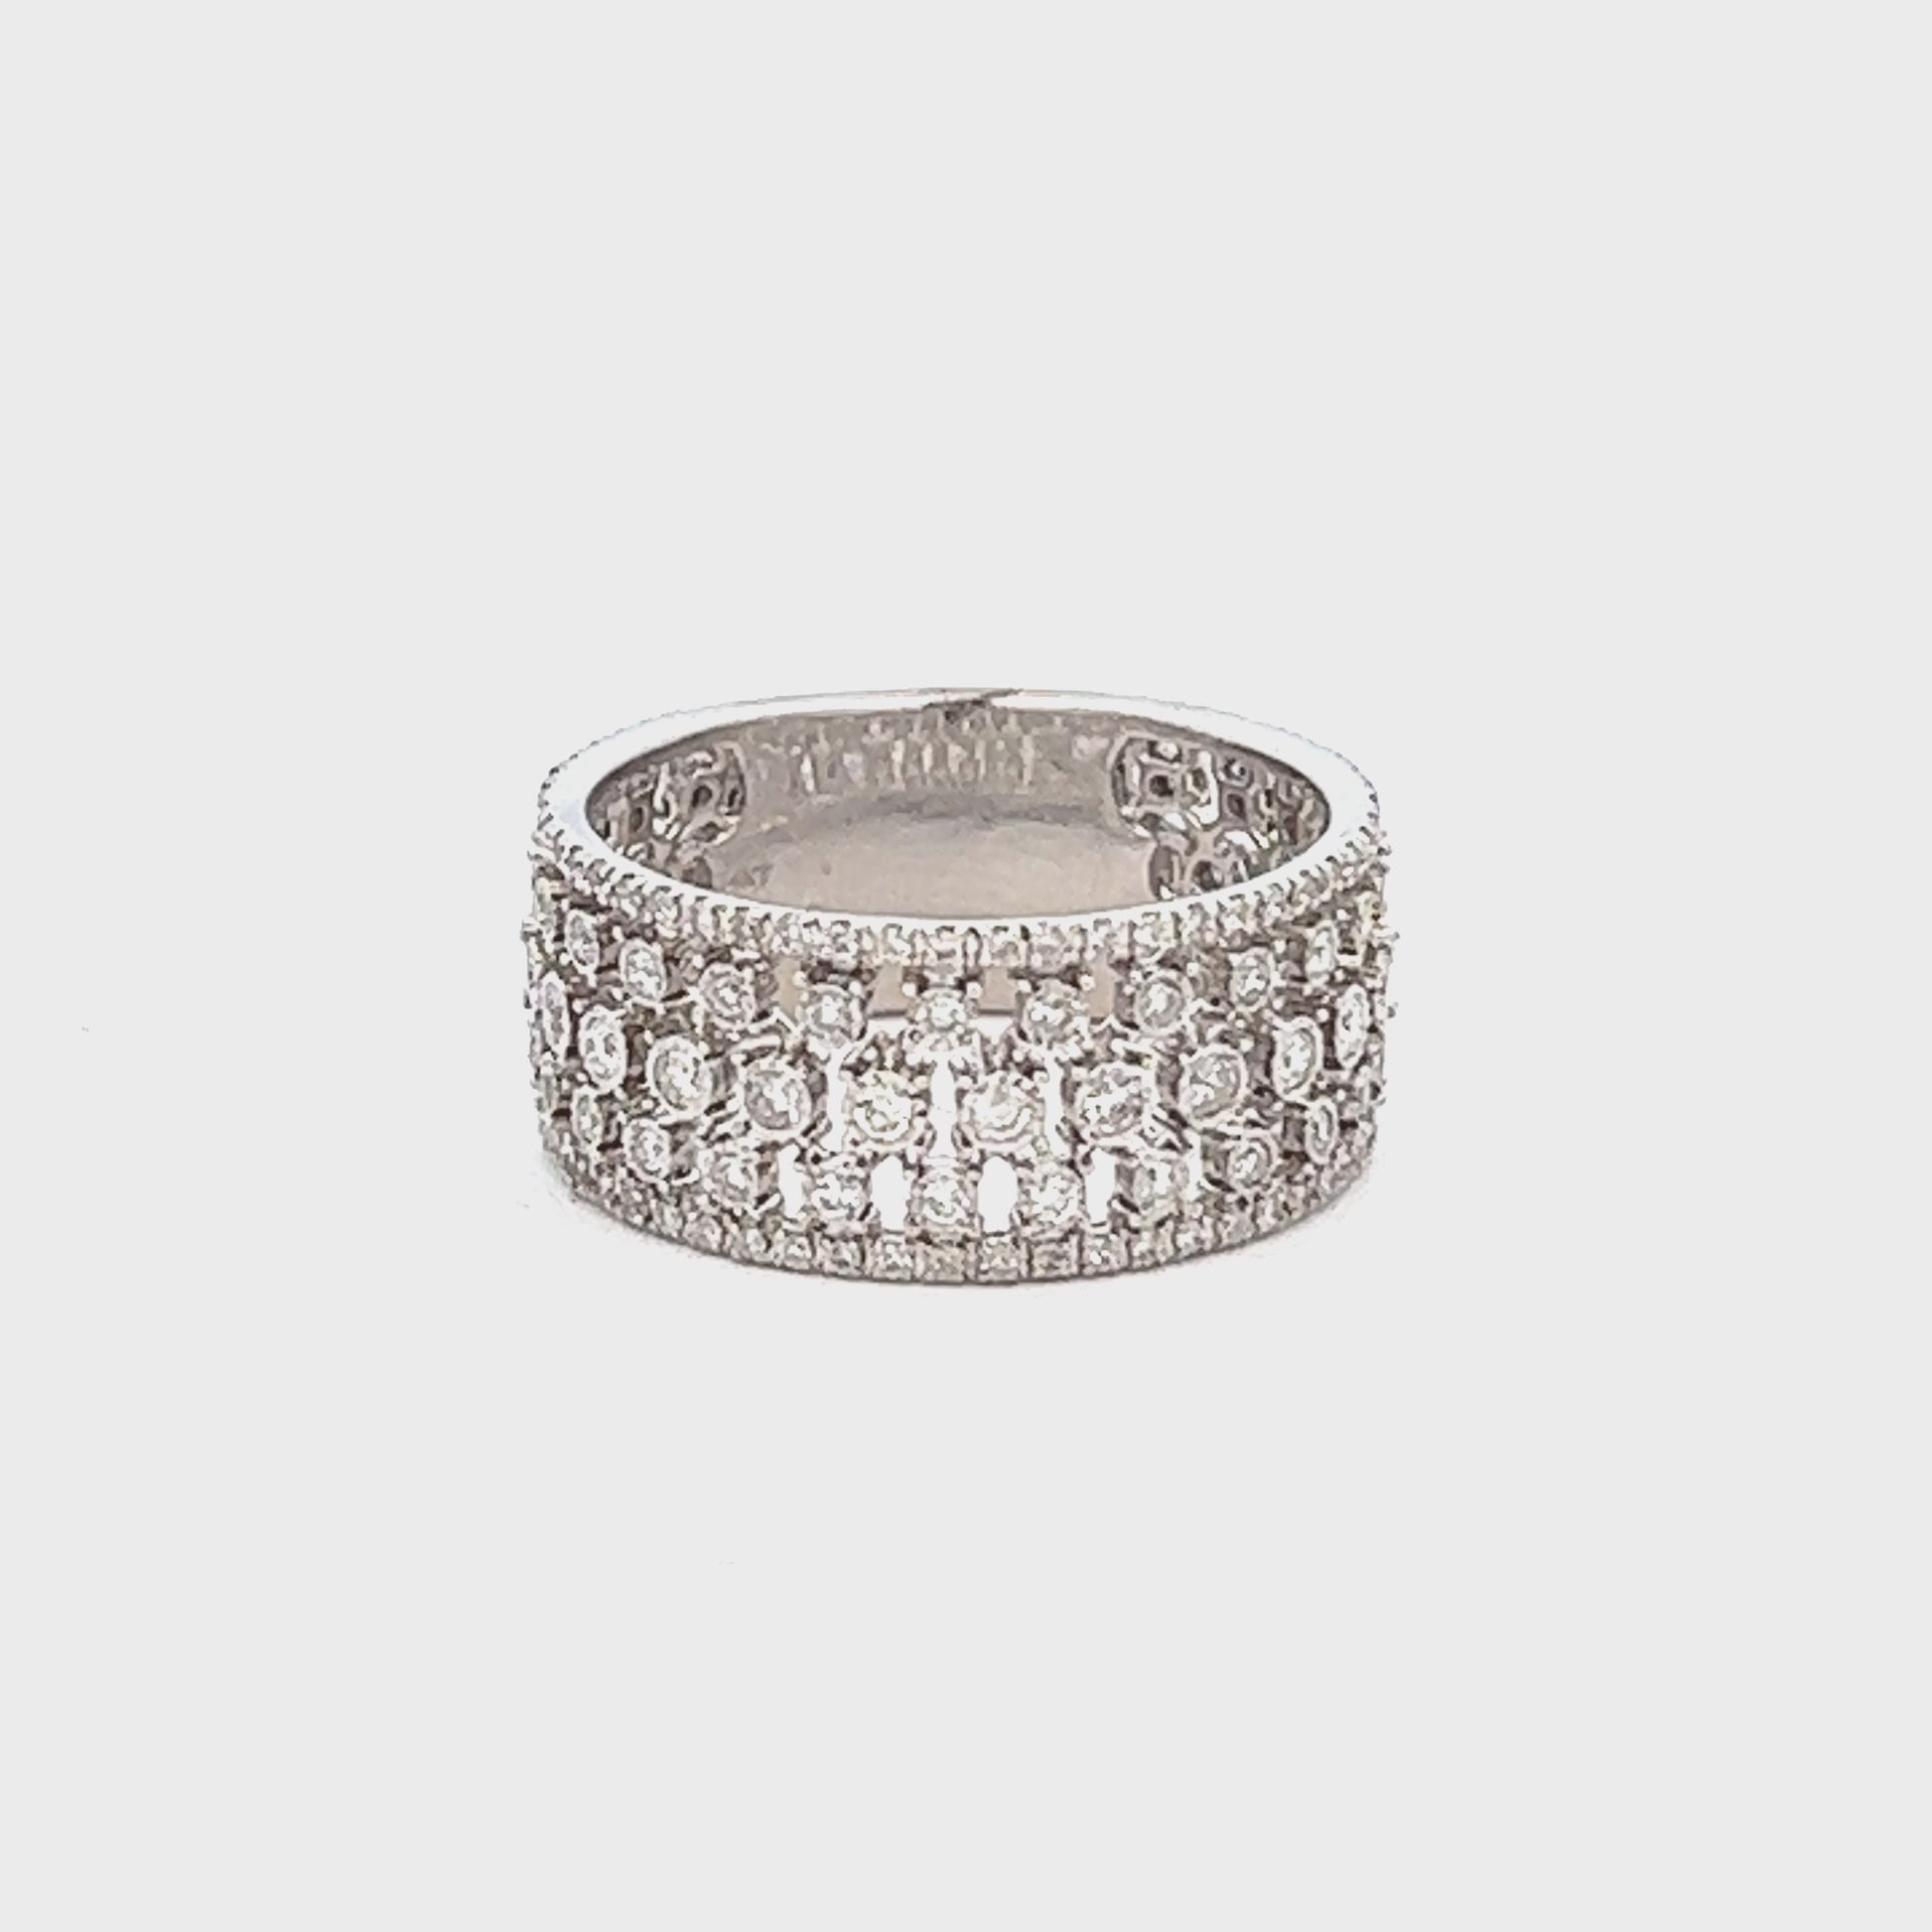 1.16ct Diamond Fashion Ring | 14k White Gold Diamond Stack Ring Video